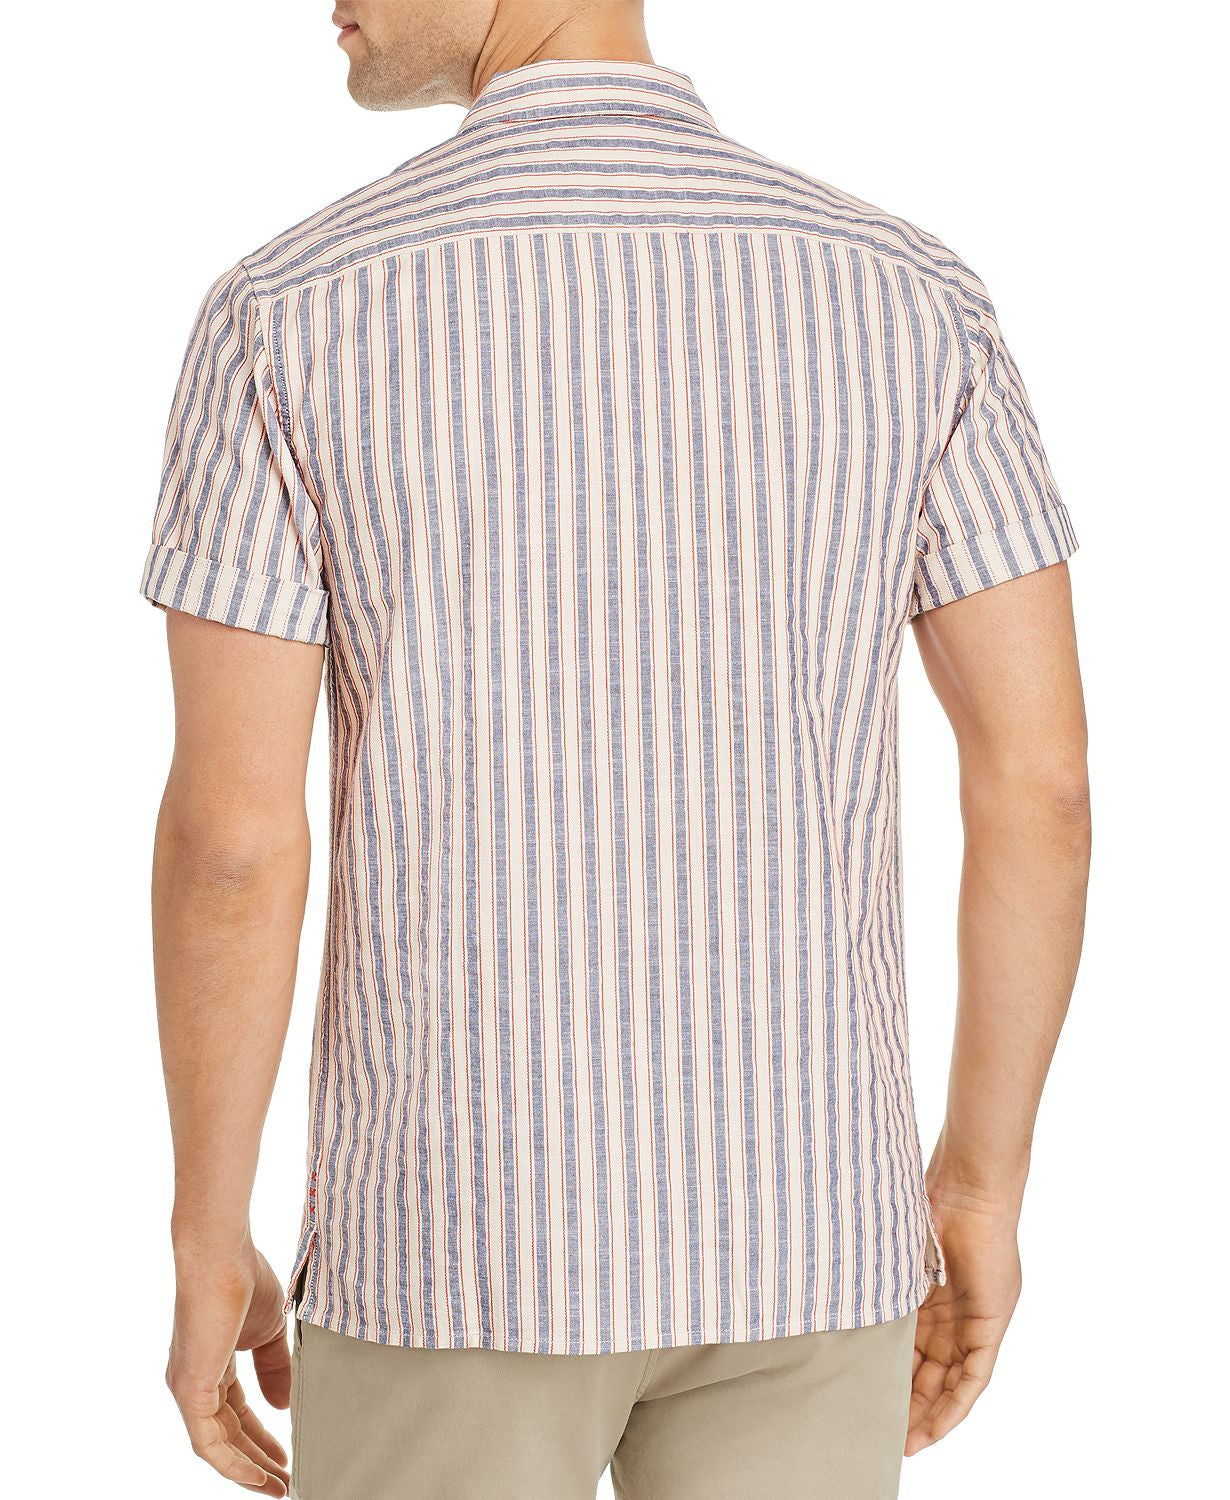 Scotch & Soda Short-sleeve Striped Slim Fit Shirt Navy